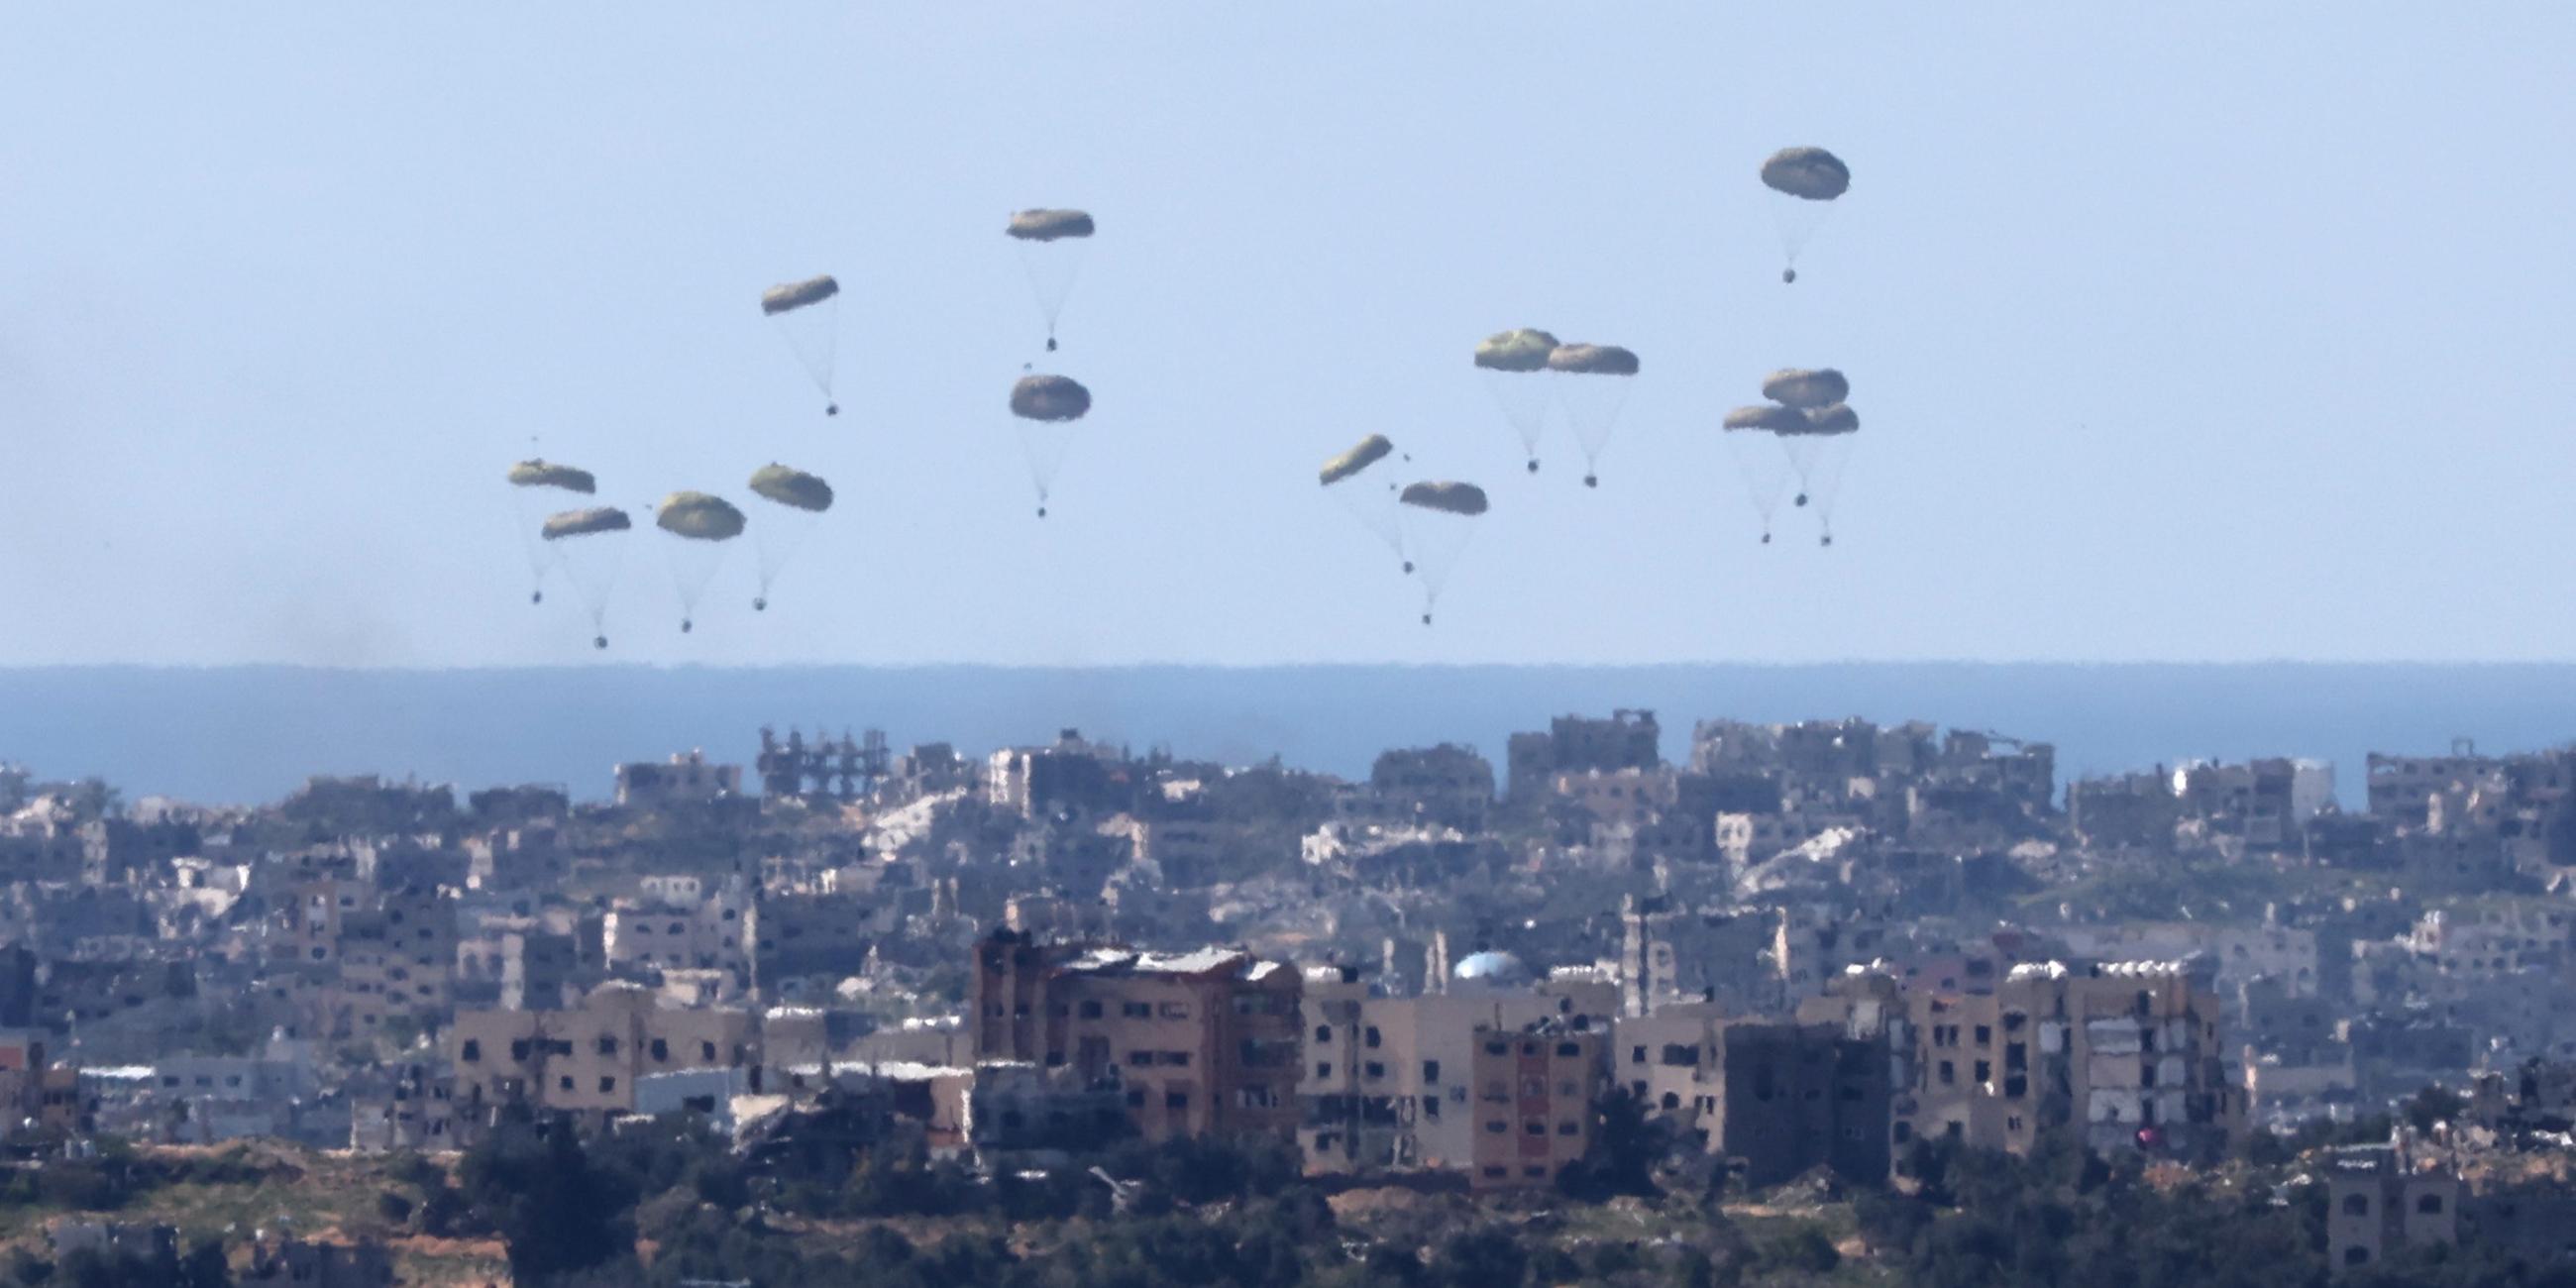 Die US-Streitkräfte werfen Hilfsgüter über dem Gazastreifen ab